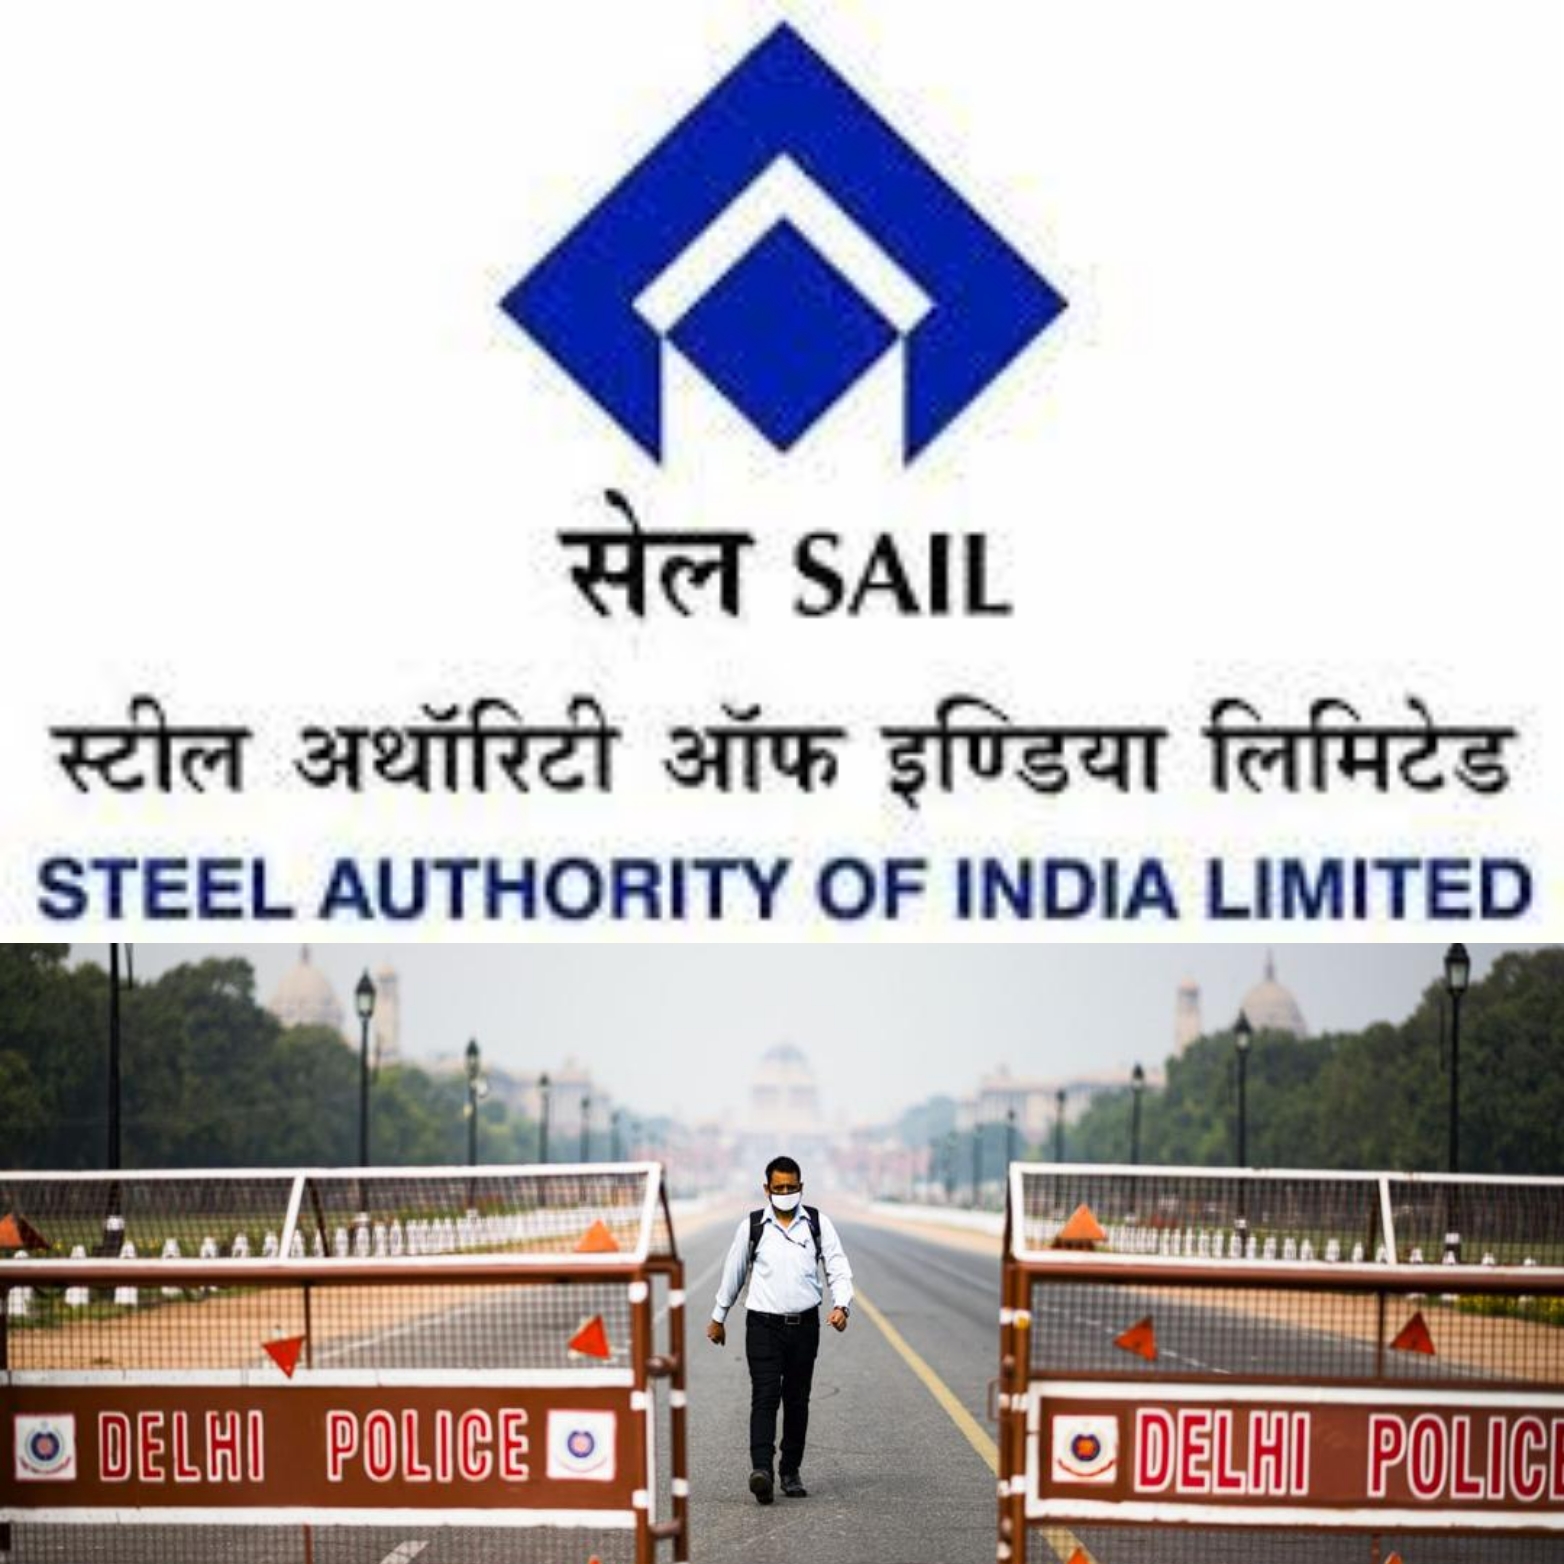 فولادساز هند تولید را کاهش می دهد/ مشتریان SAILبیشتر سفارشات را به علت منع آمدوشد لغو کردند